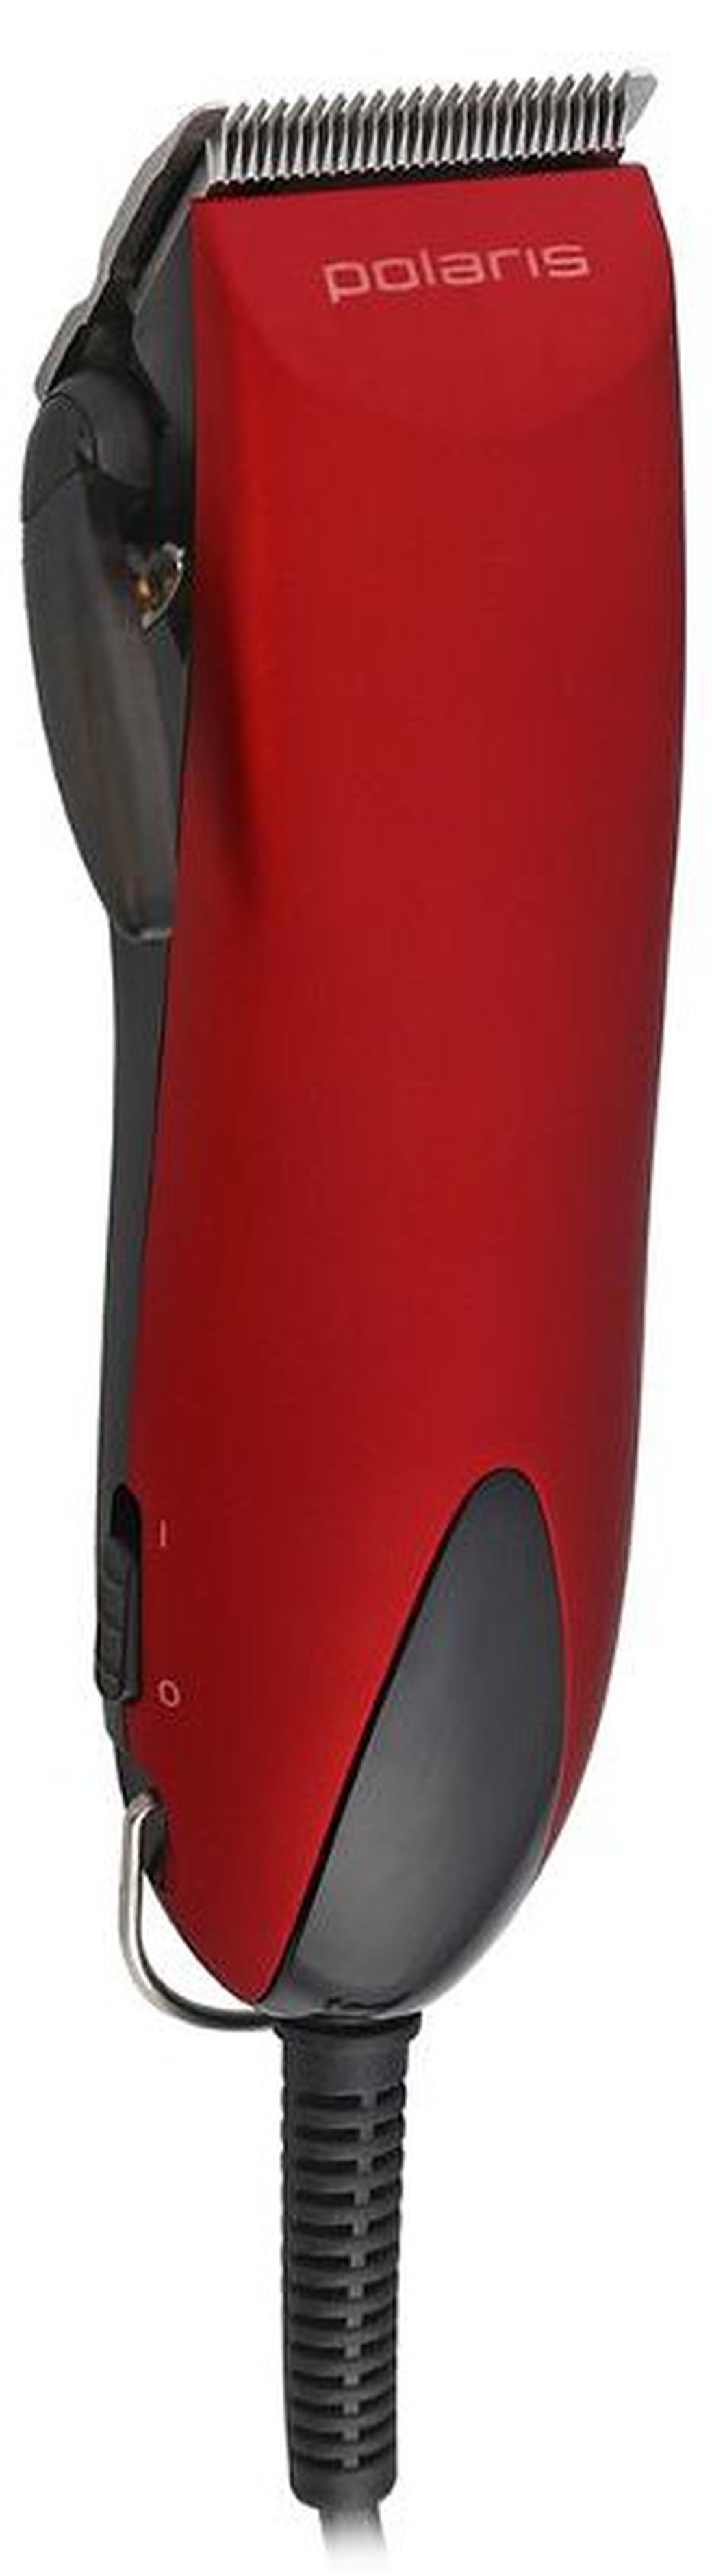 Машинка для стрижки Polaris PHC 2501 красный 12Вт (насадок в компл:1шт) фото